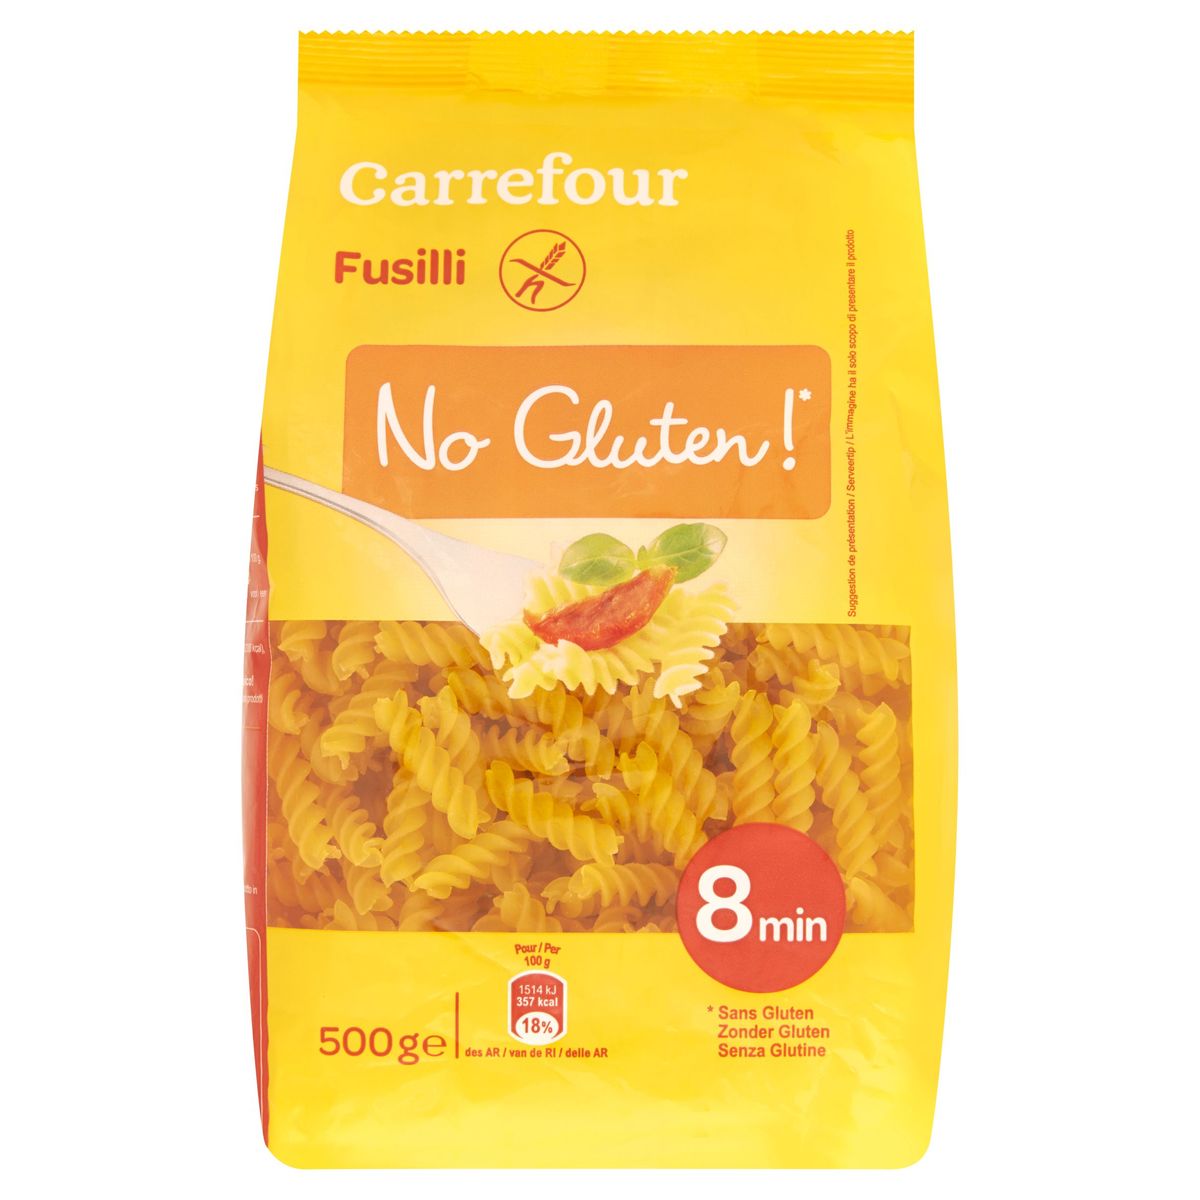 Carrefour Fusilli No Gluten! 500 g